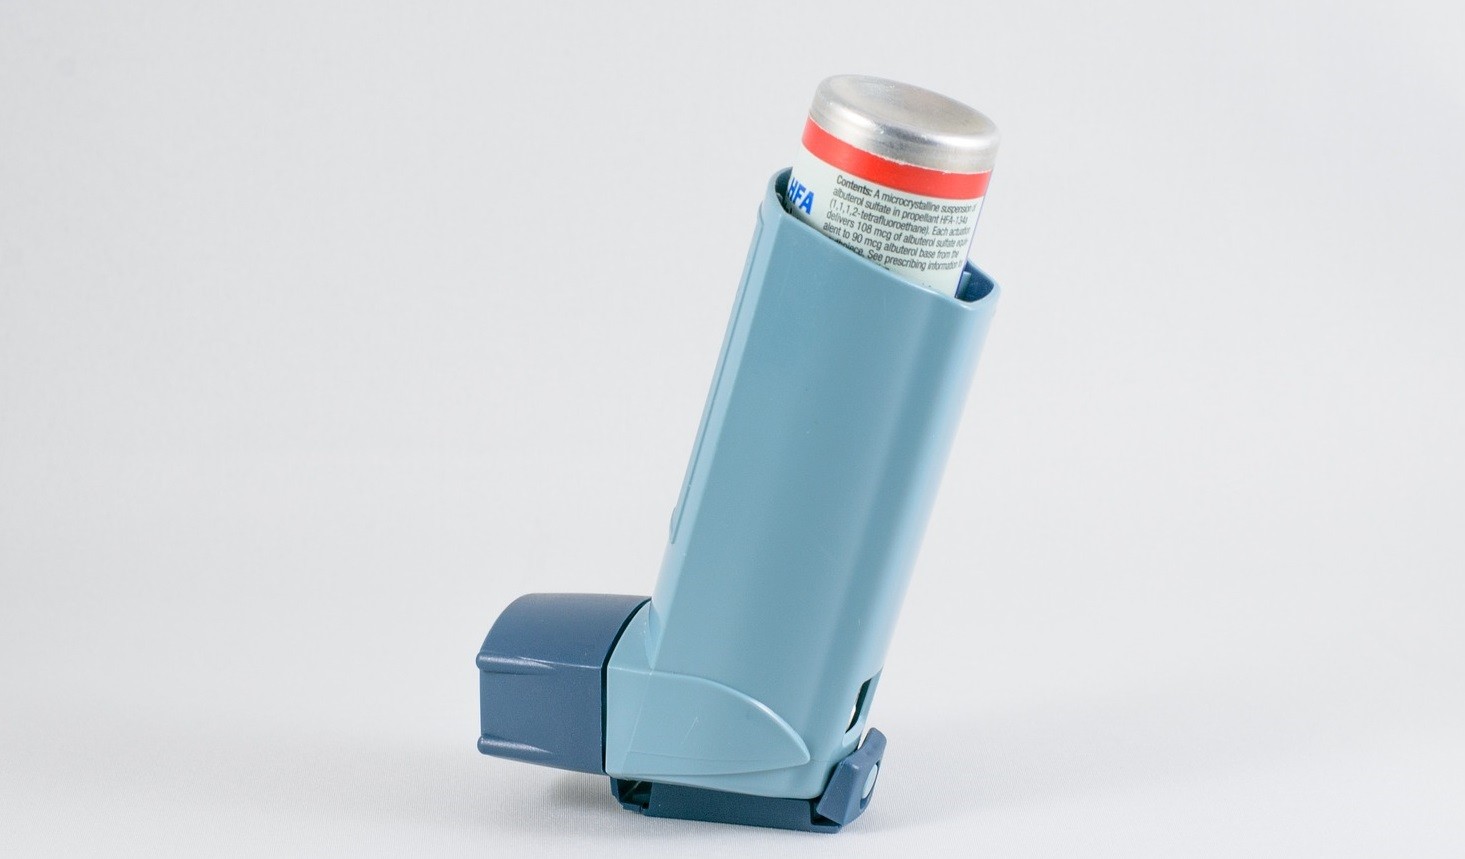 Estudo sugere que asma não está entre fatores de risco para Covid-19 (Foto: Pixabay)